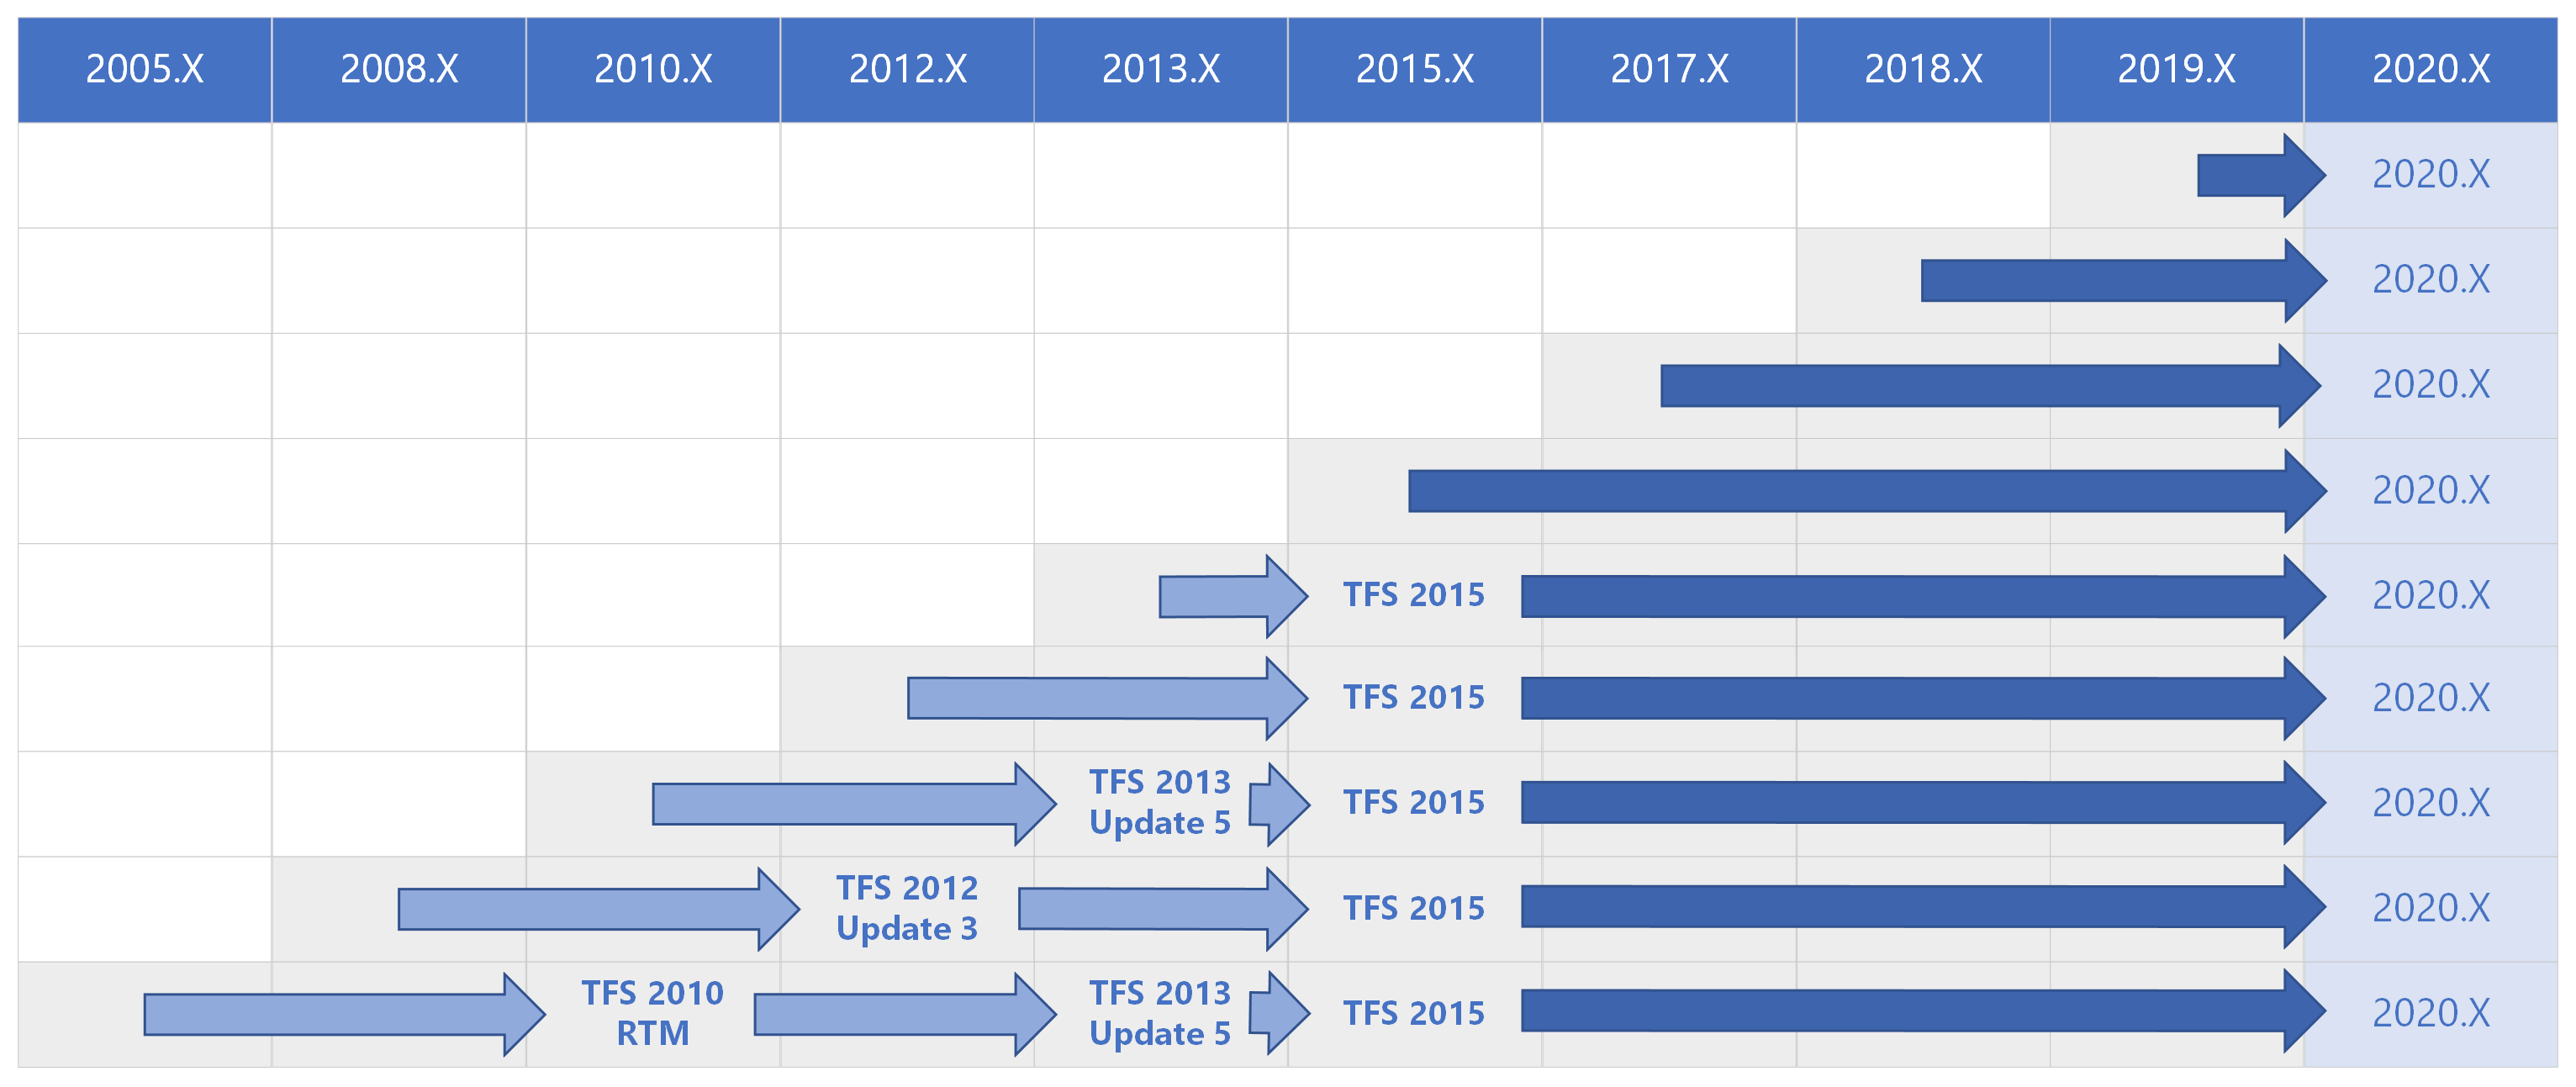 所有以前版本的 Azure DevOps 2020 升级路径矩阵。